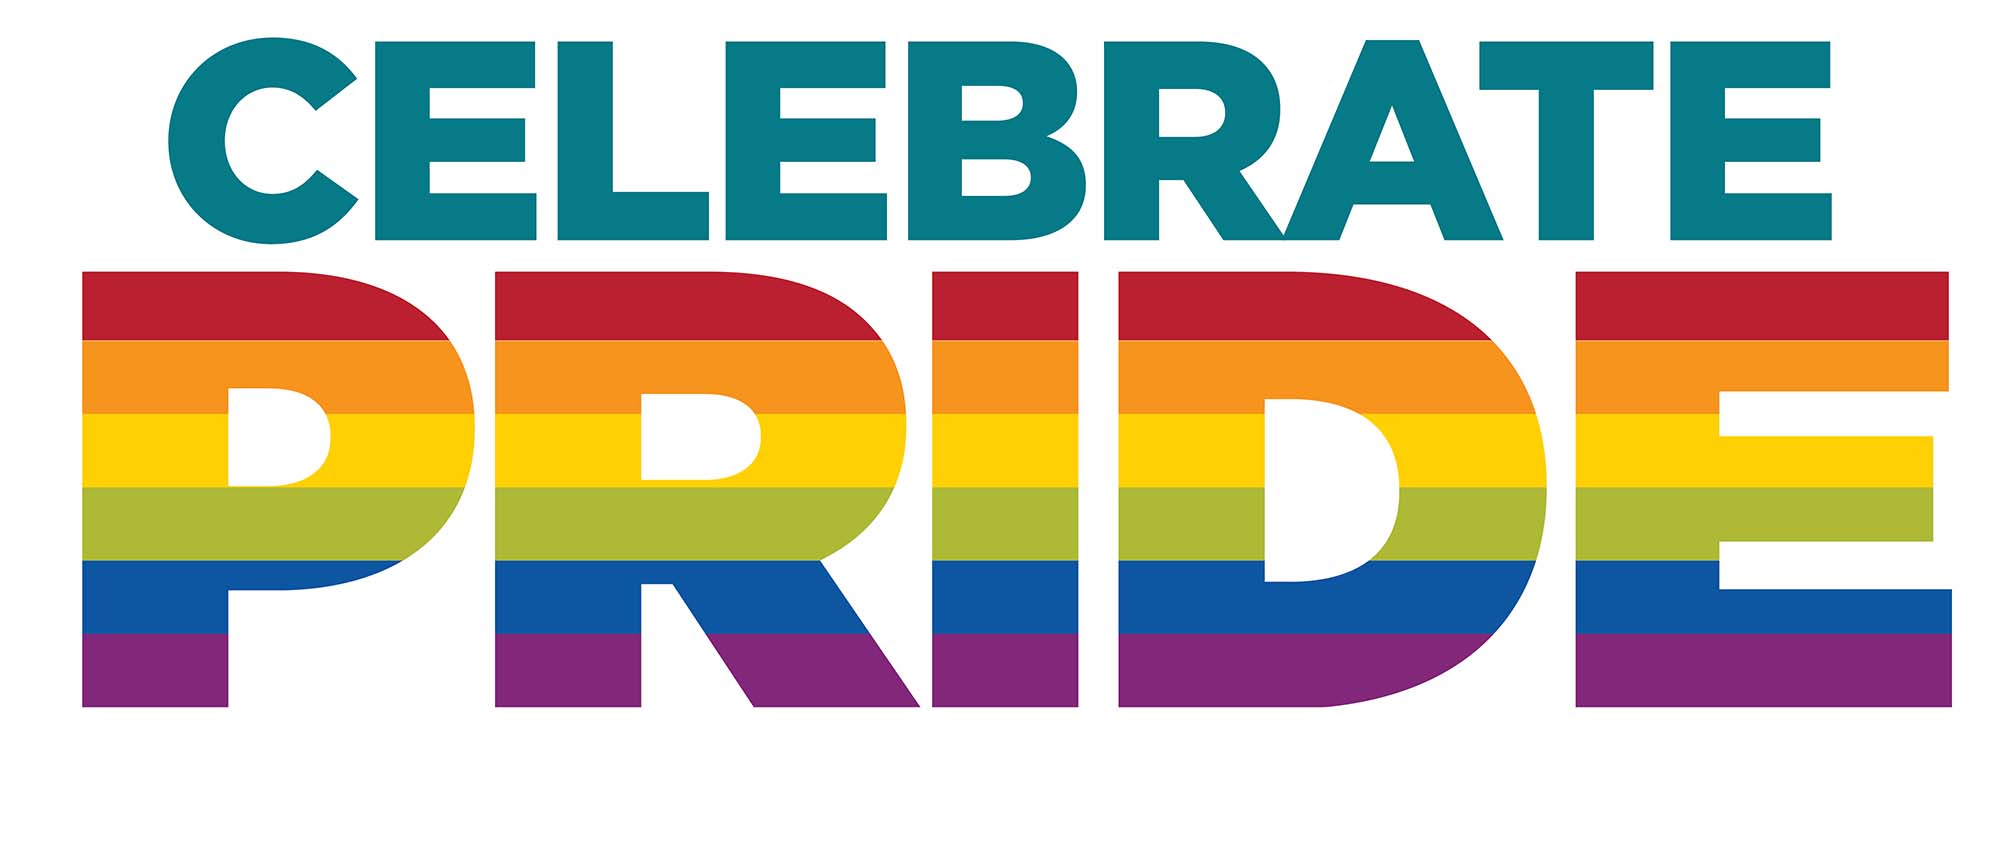 虹色のプライドで「CelebratePride」と書かれたUNMグラフィック